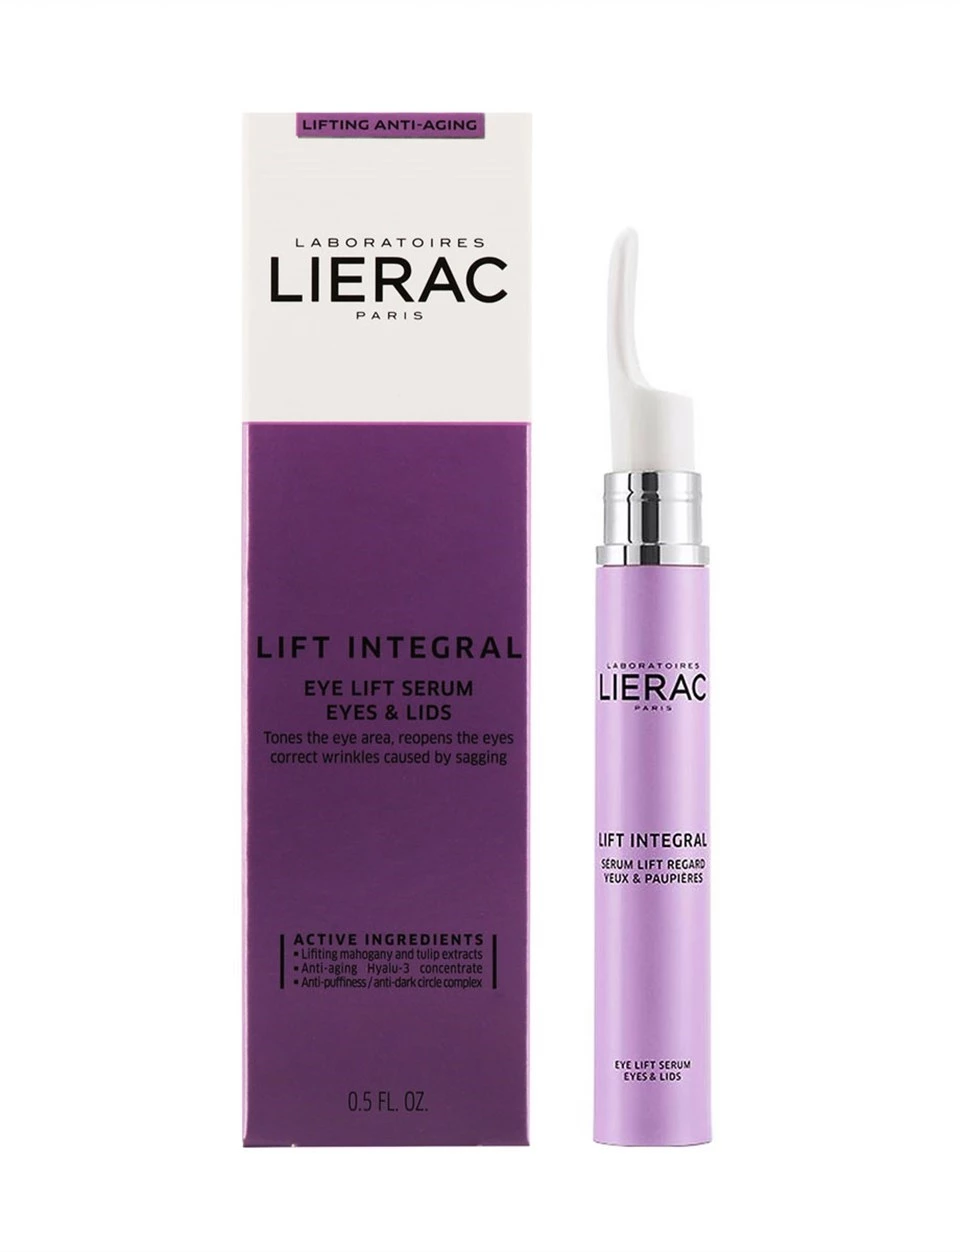 Lierac Lift Integral Eye Lift Serum 15ml Göz çevresi ve göz kapakları için tazeleyici bakım serumu.